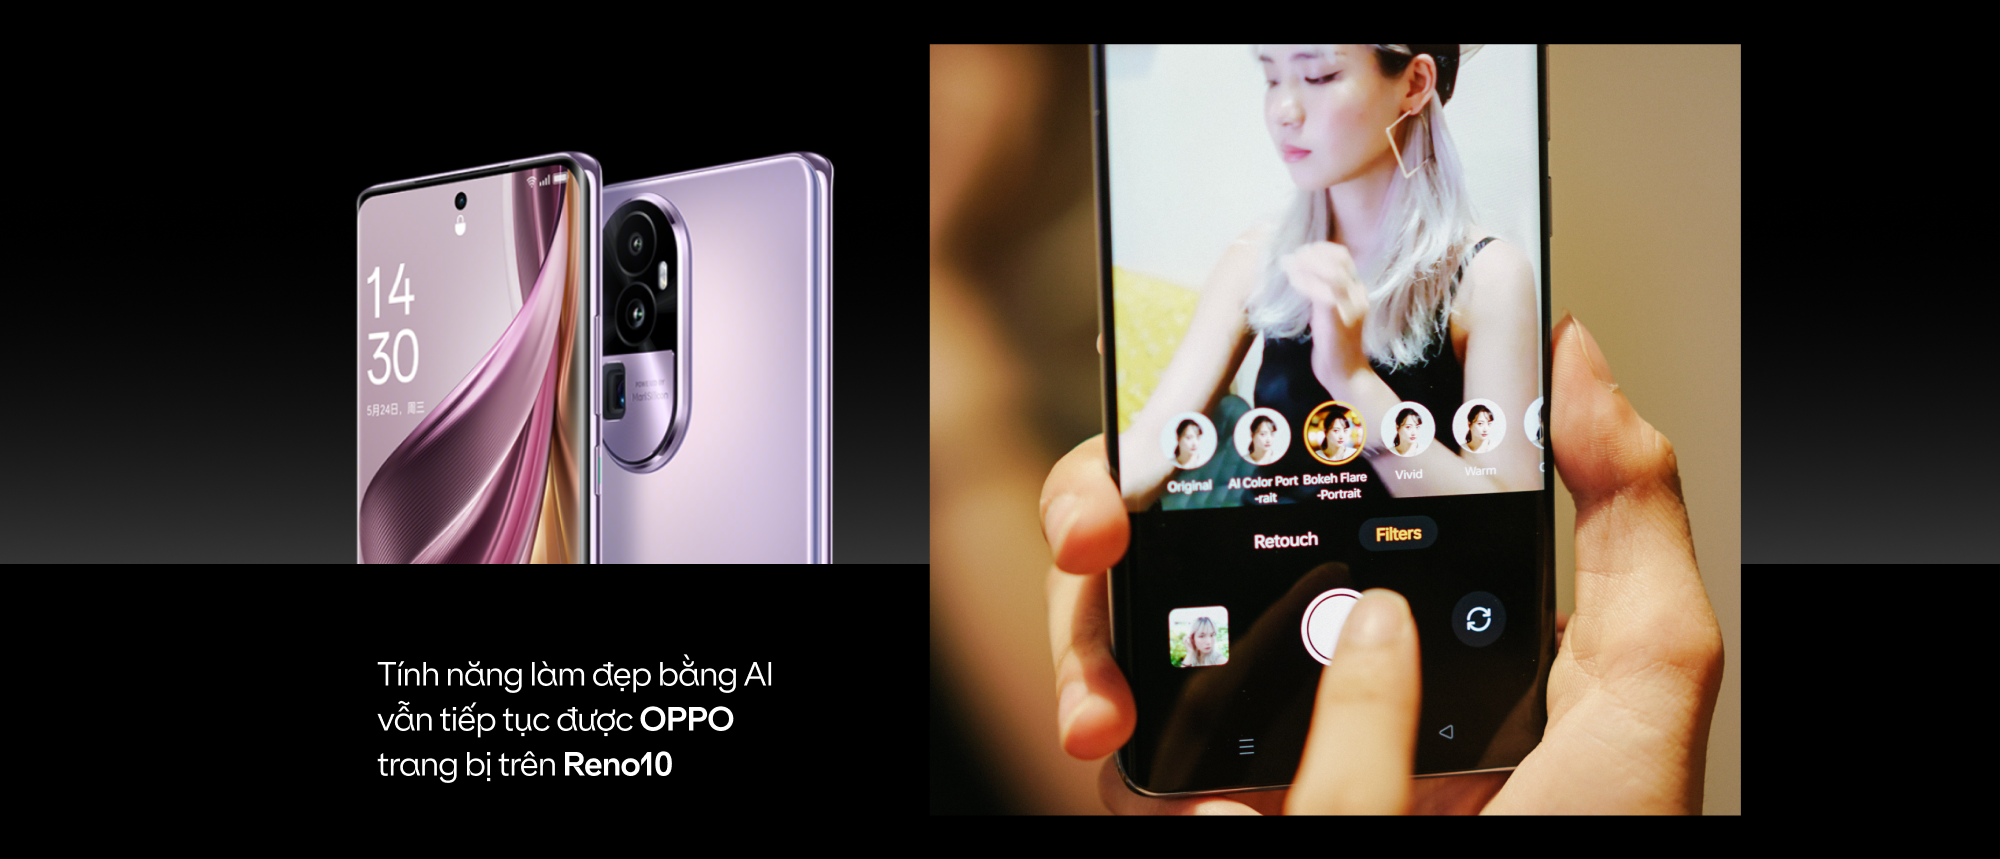 4 năm 10 đời OPPO Reno: Nhìn lại dòng smartphone tiến hóa siêu nhanh cùng giới trẻ - Ảnh 23.